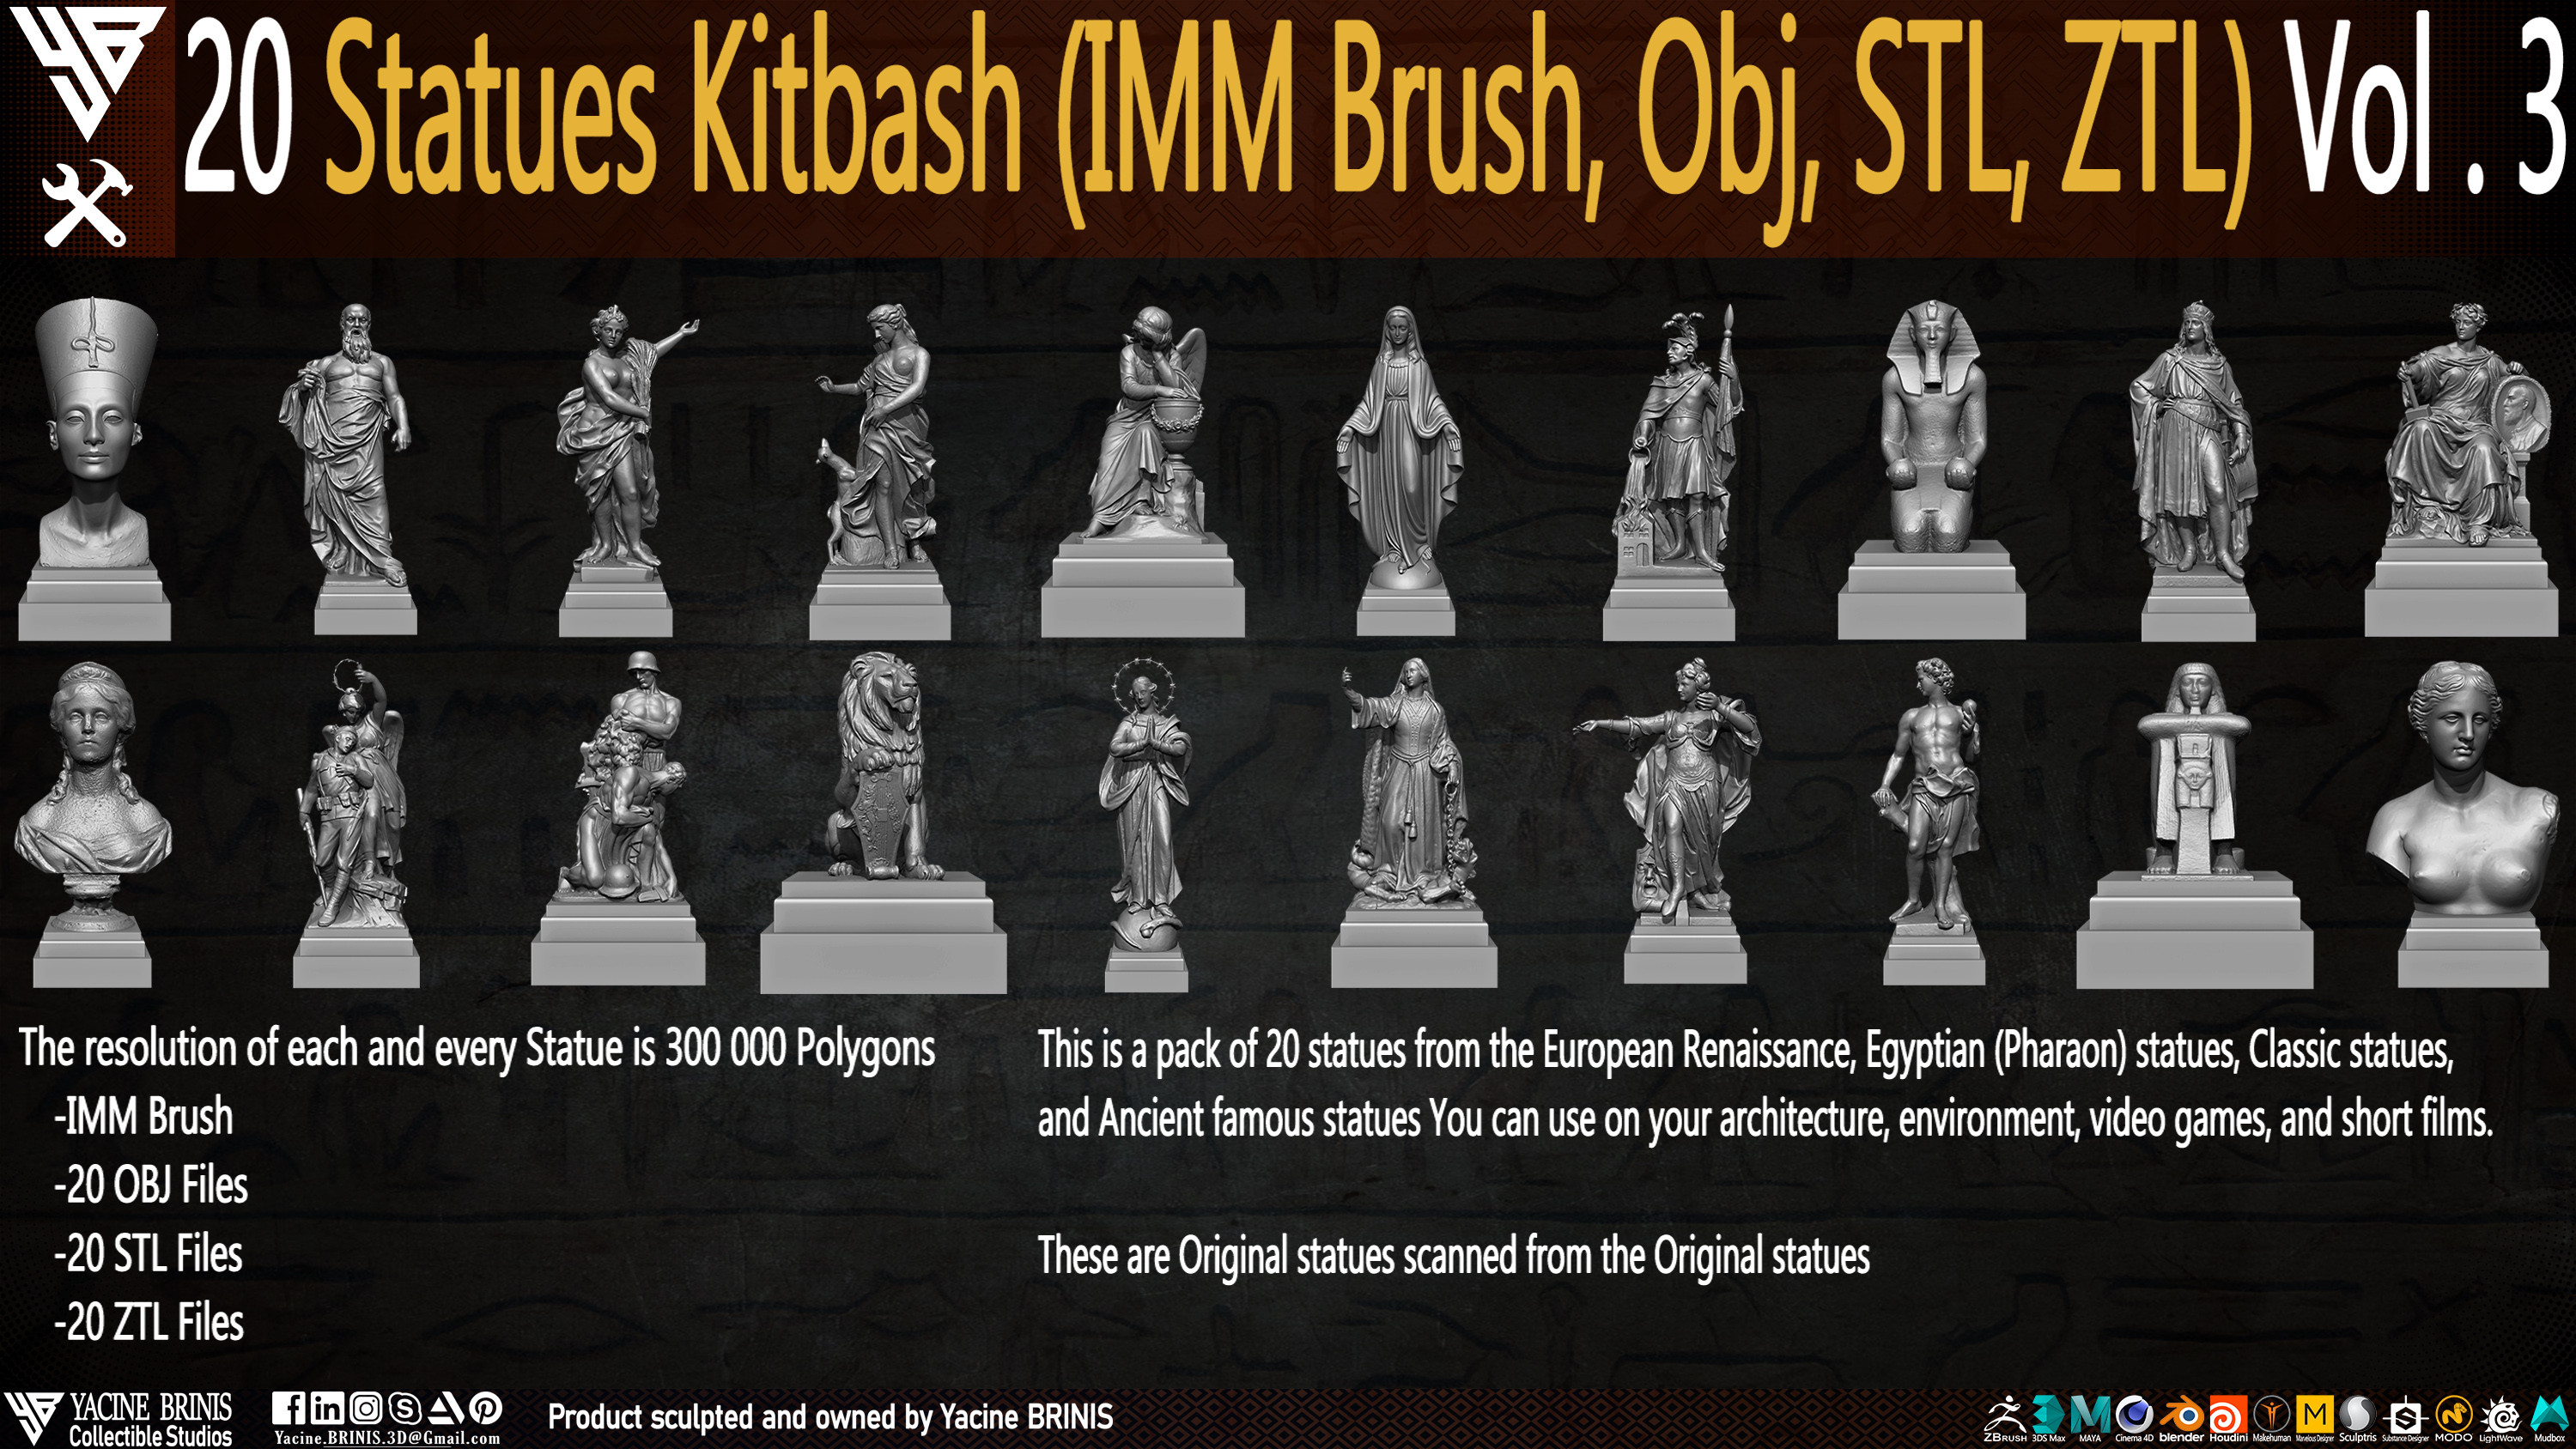 Statues Kitbash by yacine brinis Set 16